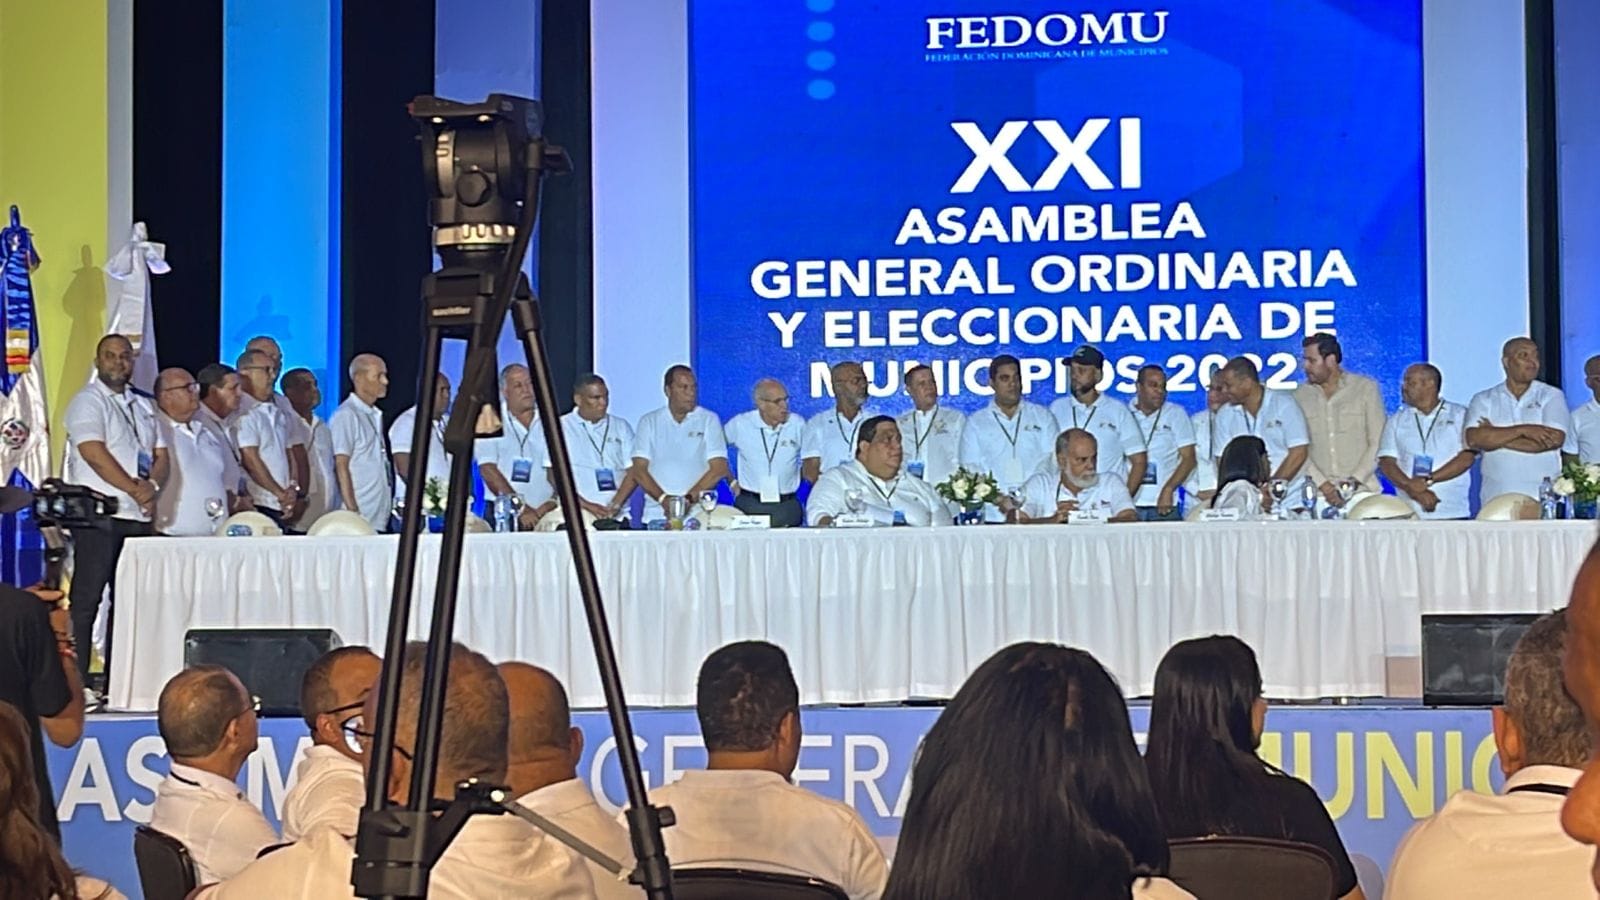 Nuestro Alcalde Eleazar Guerrero se encuentra participando en la Asamblea General de Municipios donde se escogerán las nuevas autoridades de la Federación Dominicana de Municipios 2022-2024.